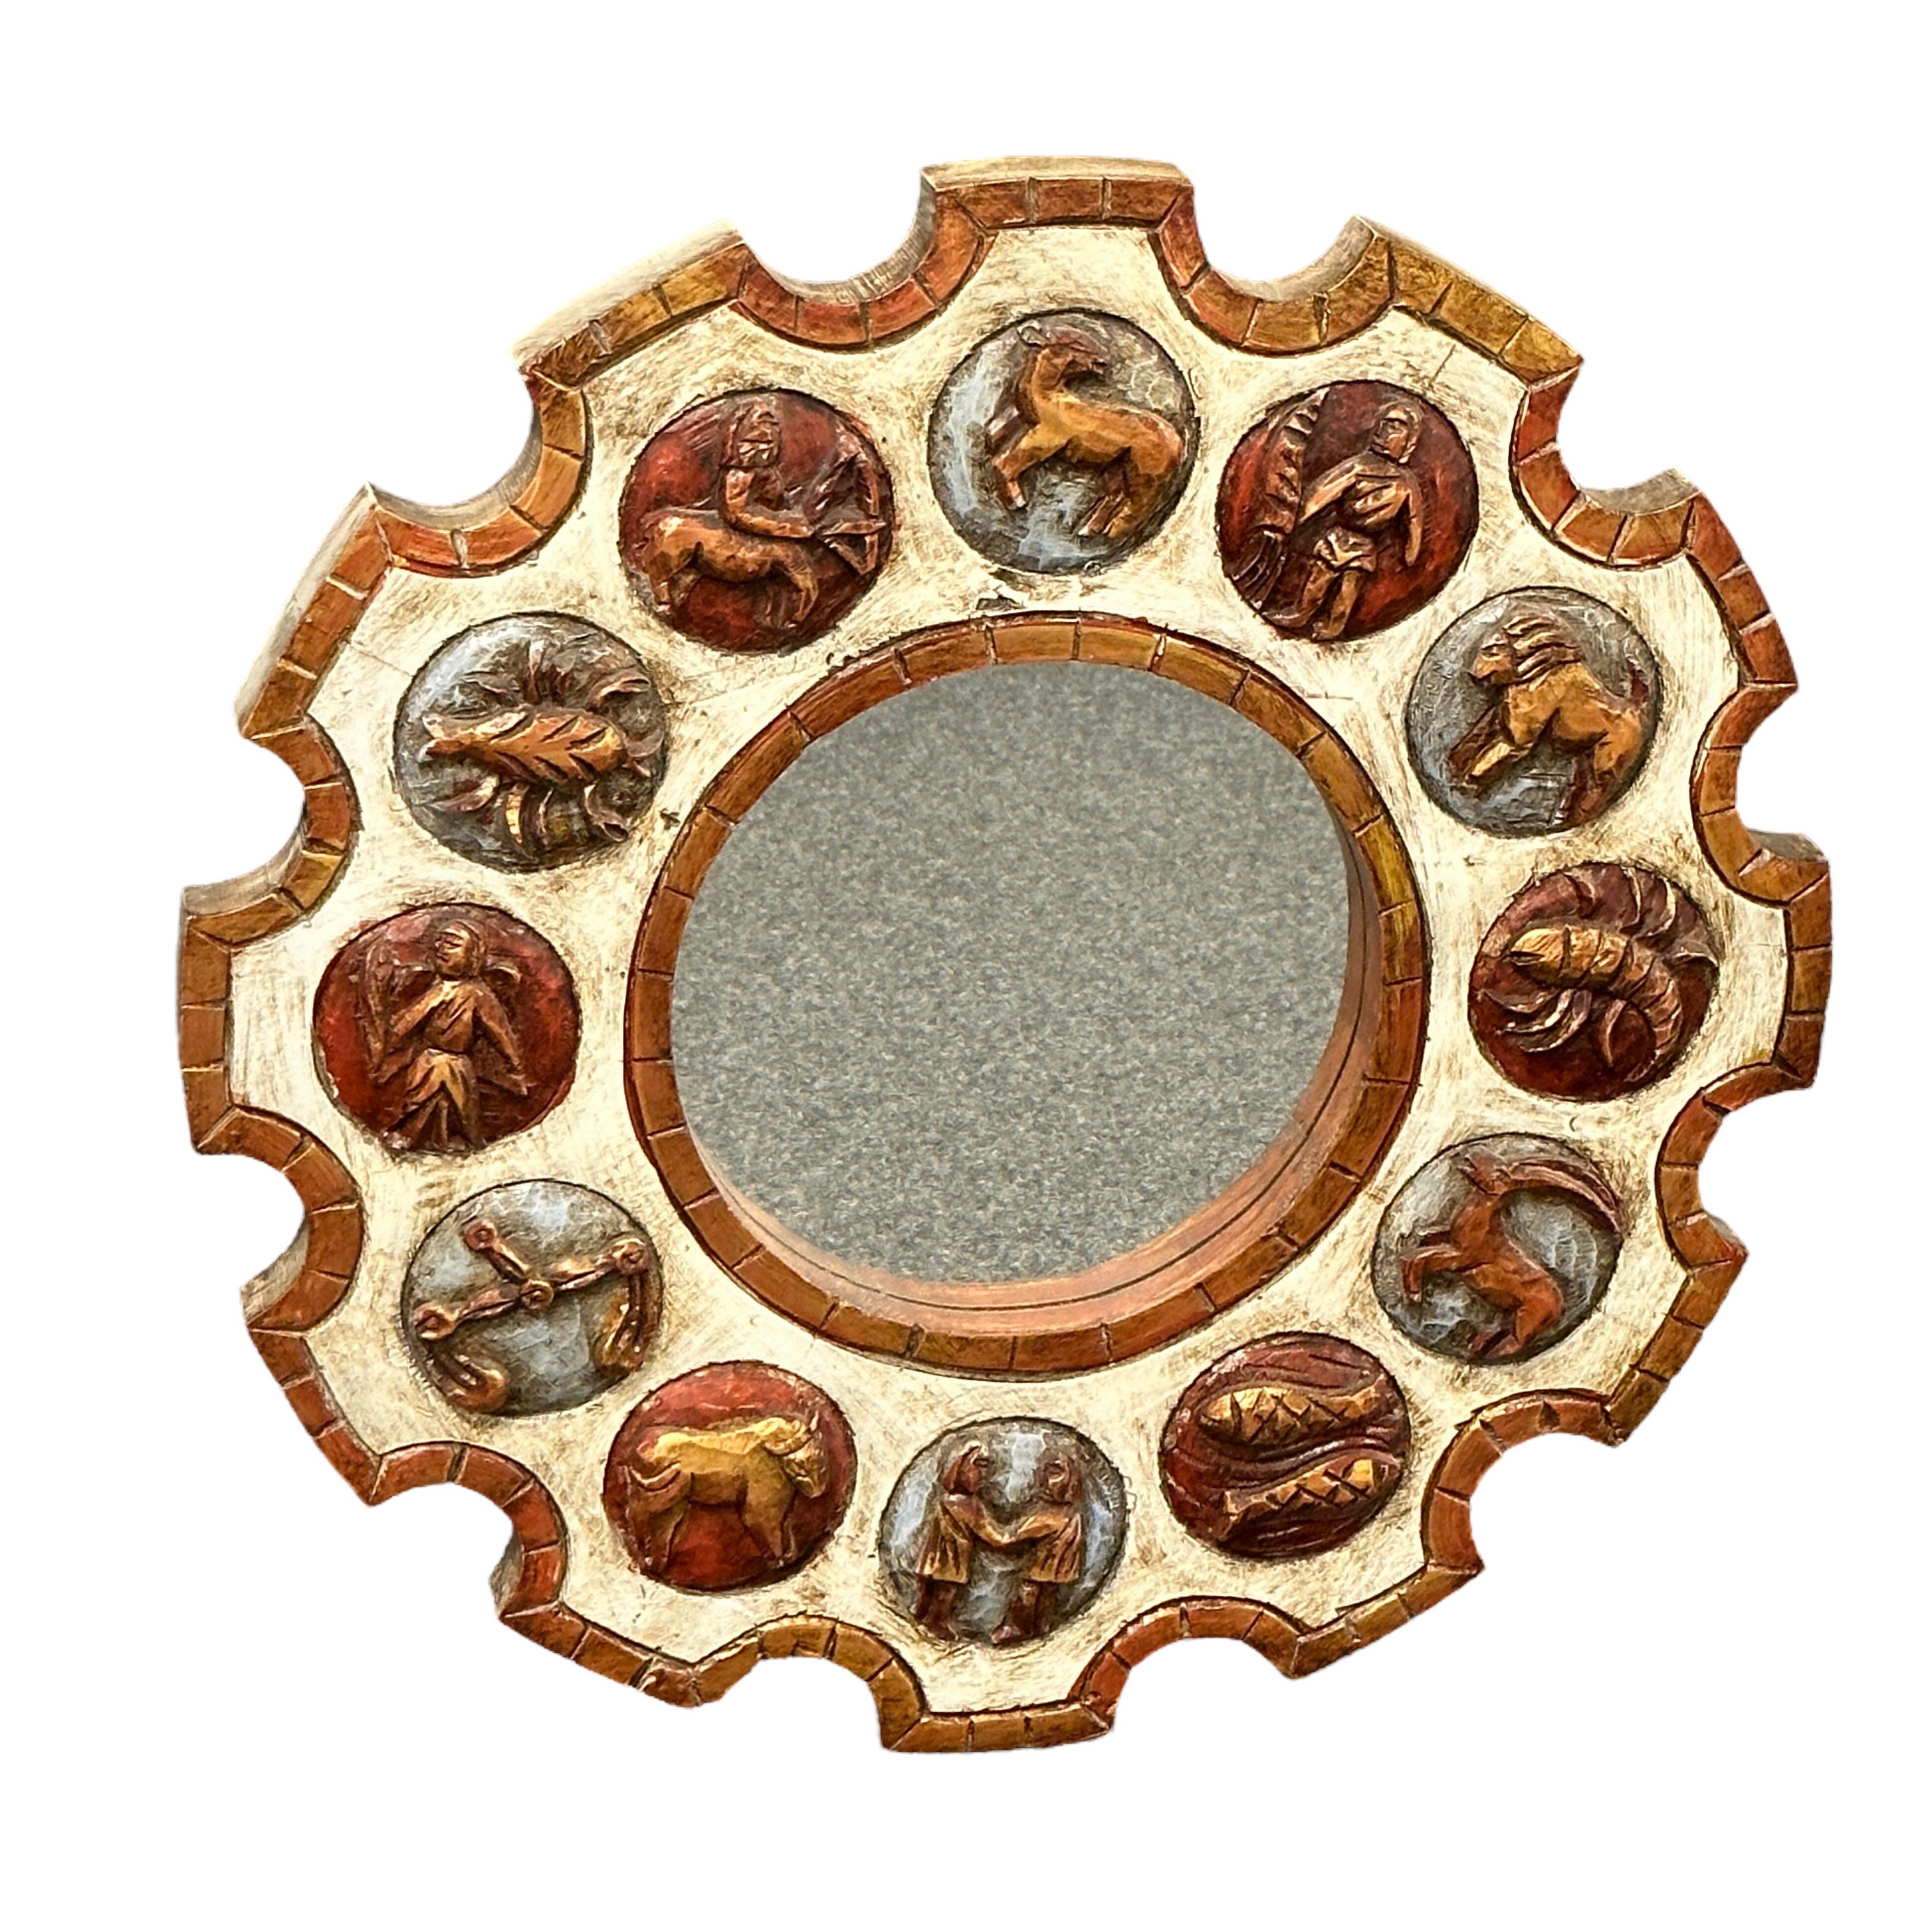 Ein schöner Zodiac-Sonnenschliffspiegel aus geschnitztem Holz, Deutschland, 1970er Jahre. Brutalist Style Horoskop Spiegel mit farbigen Rad Rahmen und 12 Zeichen des Zodiac. Tolle Zodiac-Zeichen auf einem braun-creme-weißen Rahmen. Auffälliger